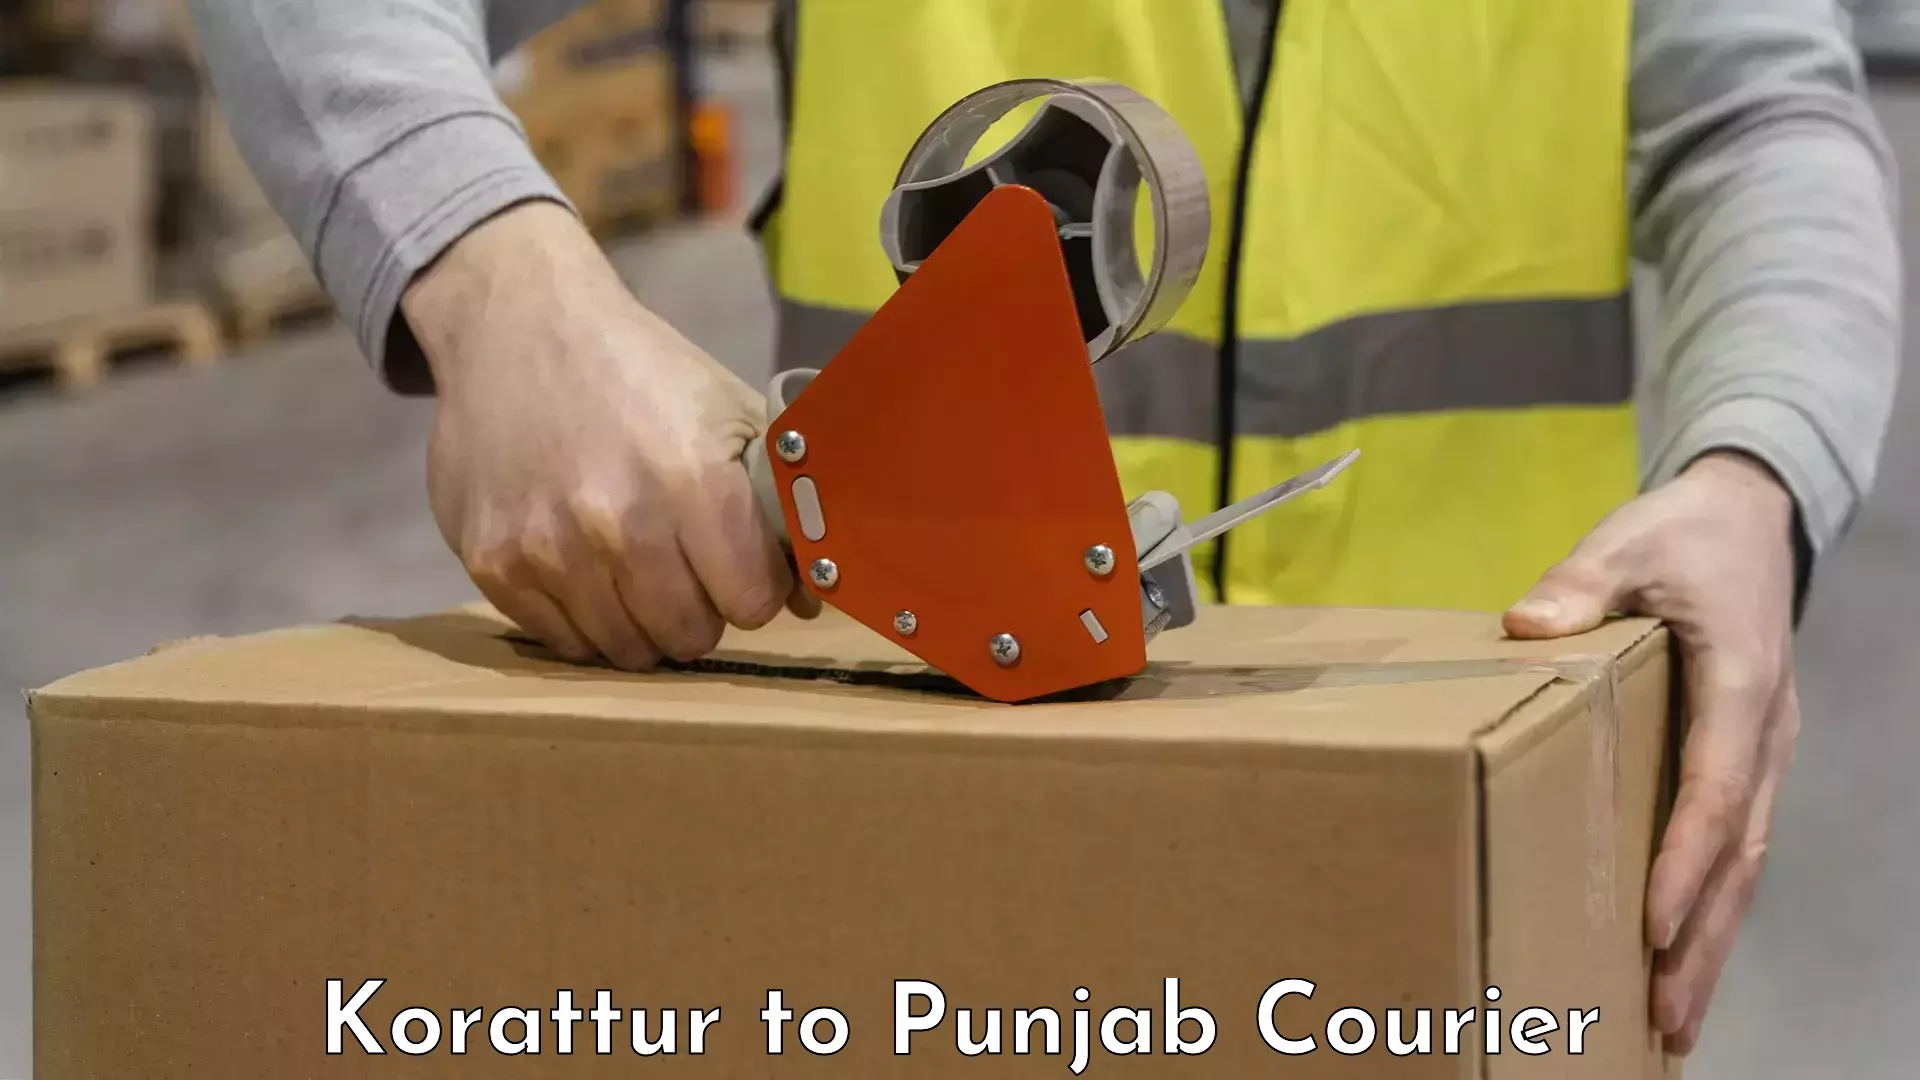 Luggage shipping planner Korattur to Punjab